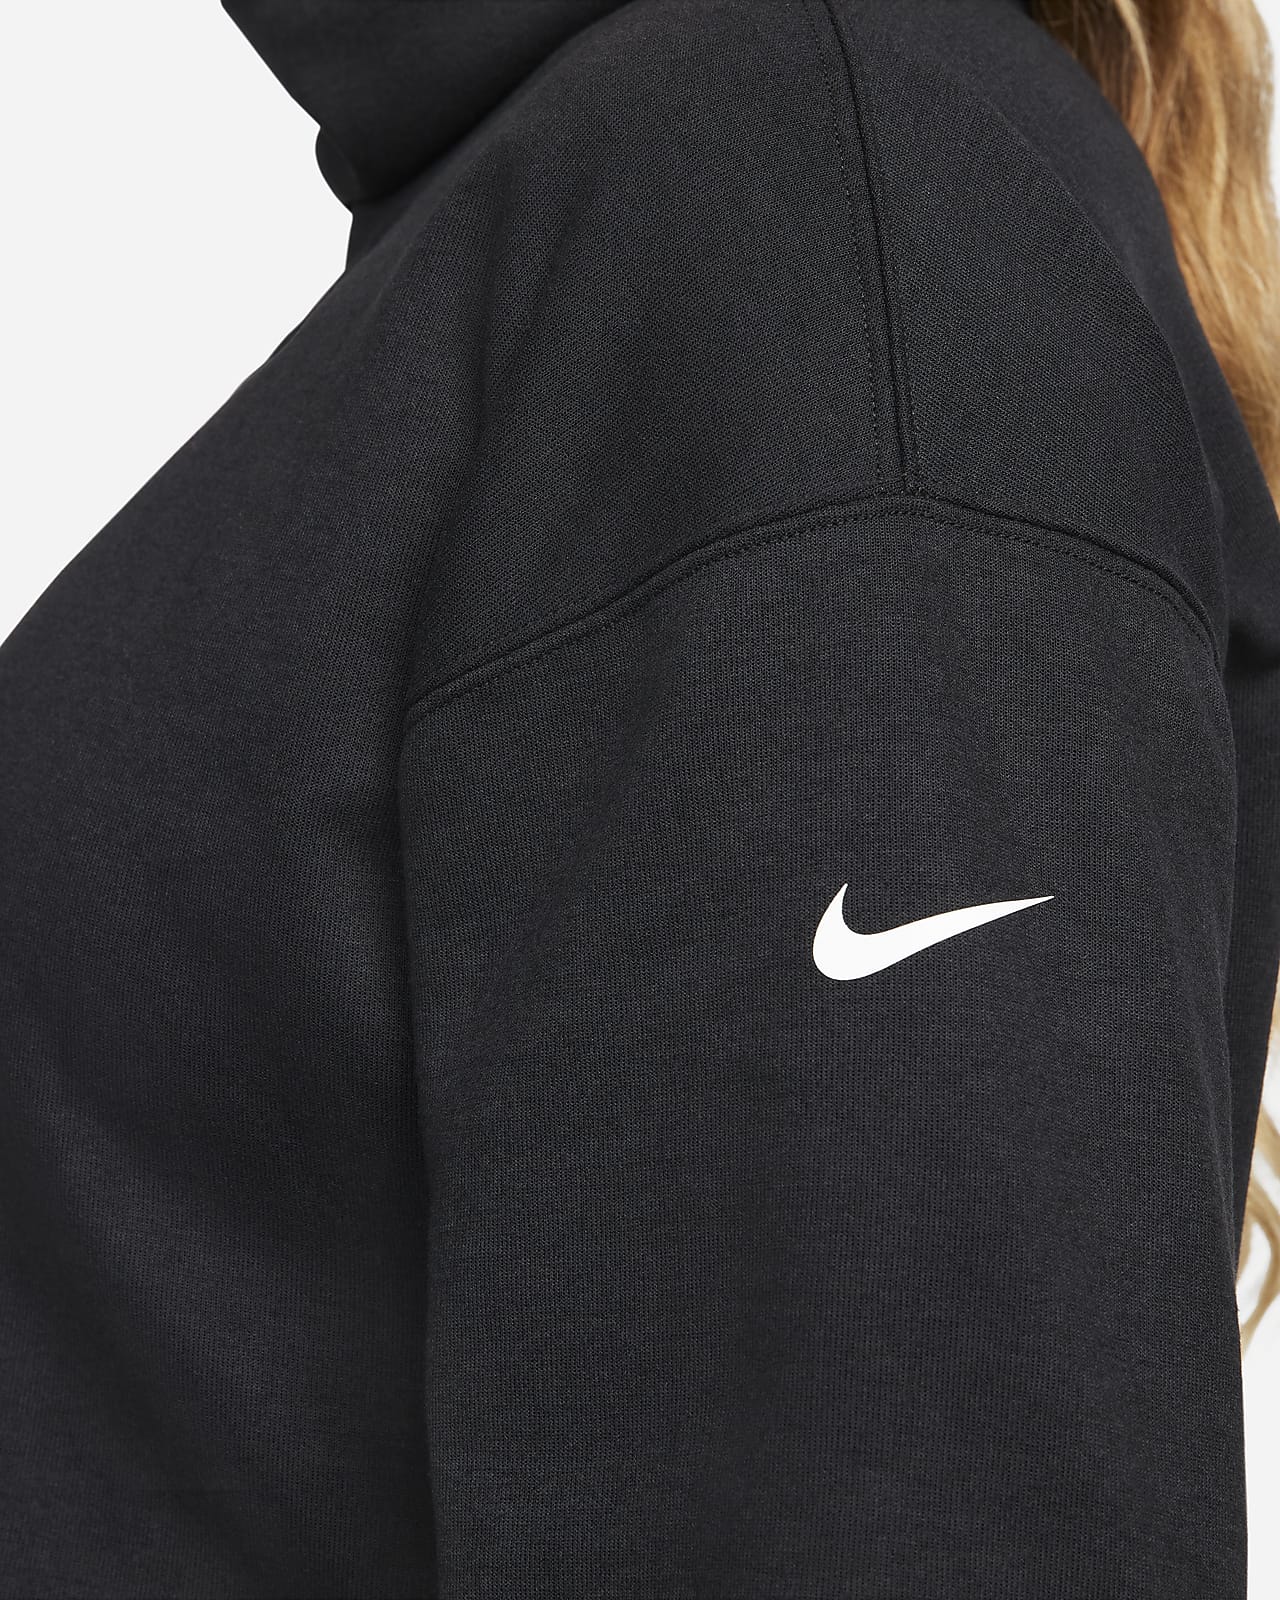 Nike (m) Convertible Diaper Bag (maternity) (25l) in Black